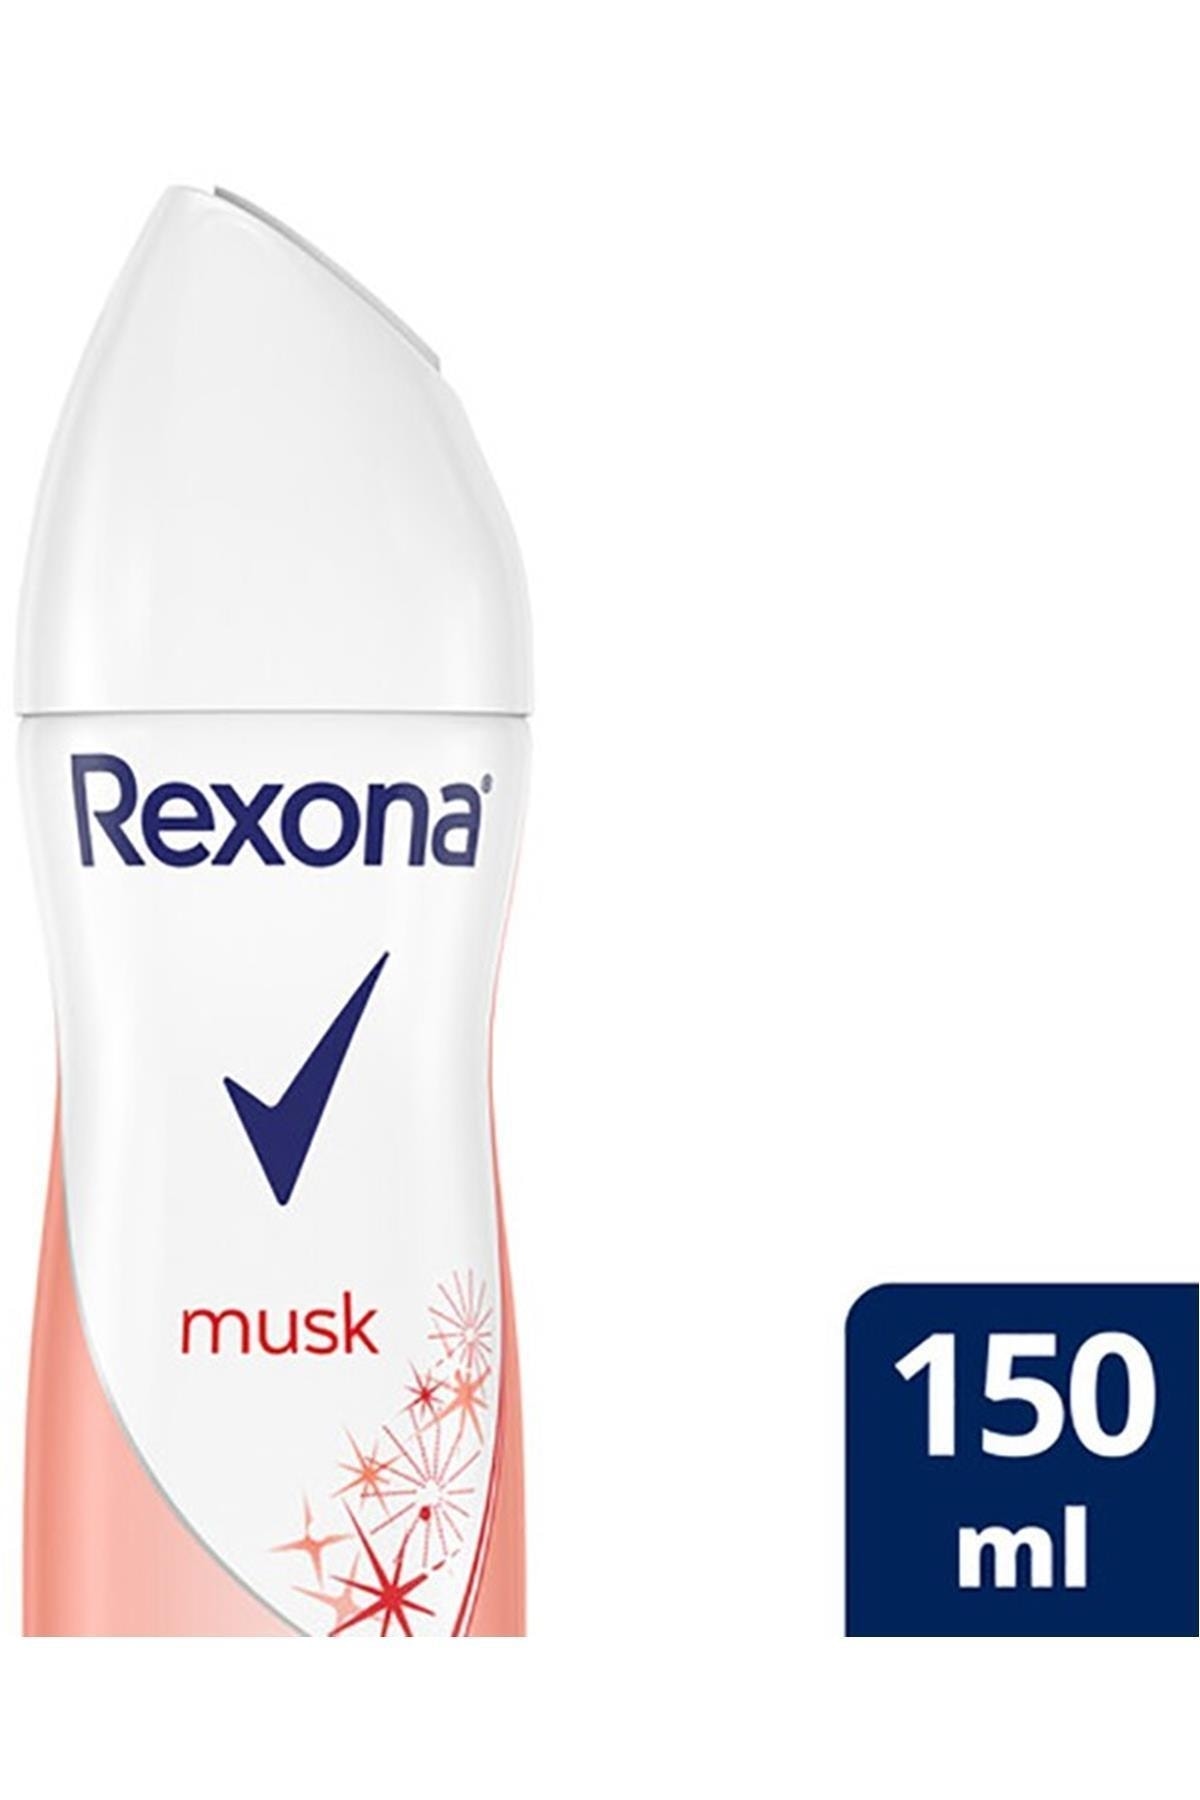 اسپری دئودورانت زنانه Musk Deodorant رایحه مشک 150 میل رکسونا Rexona